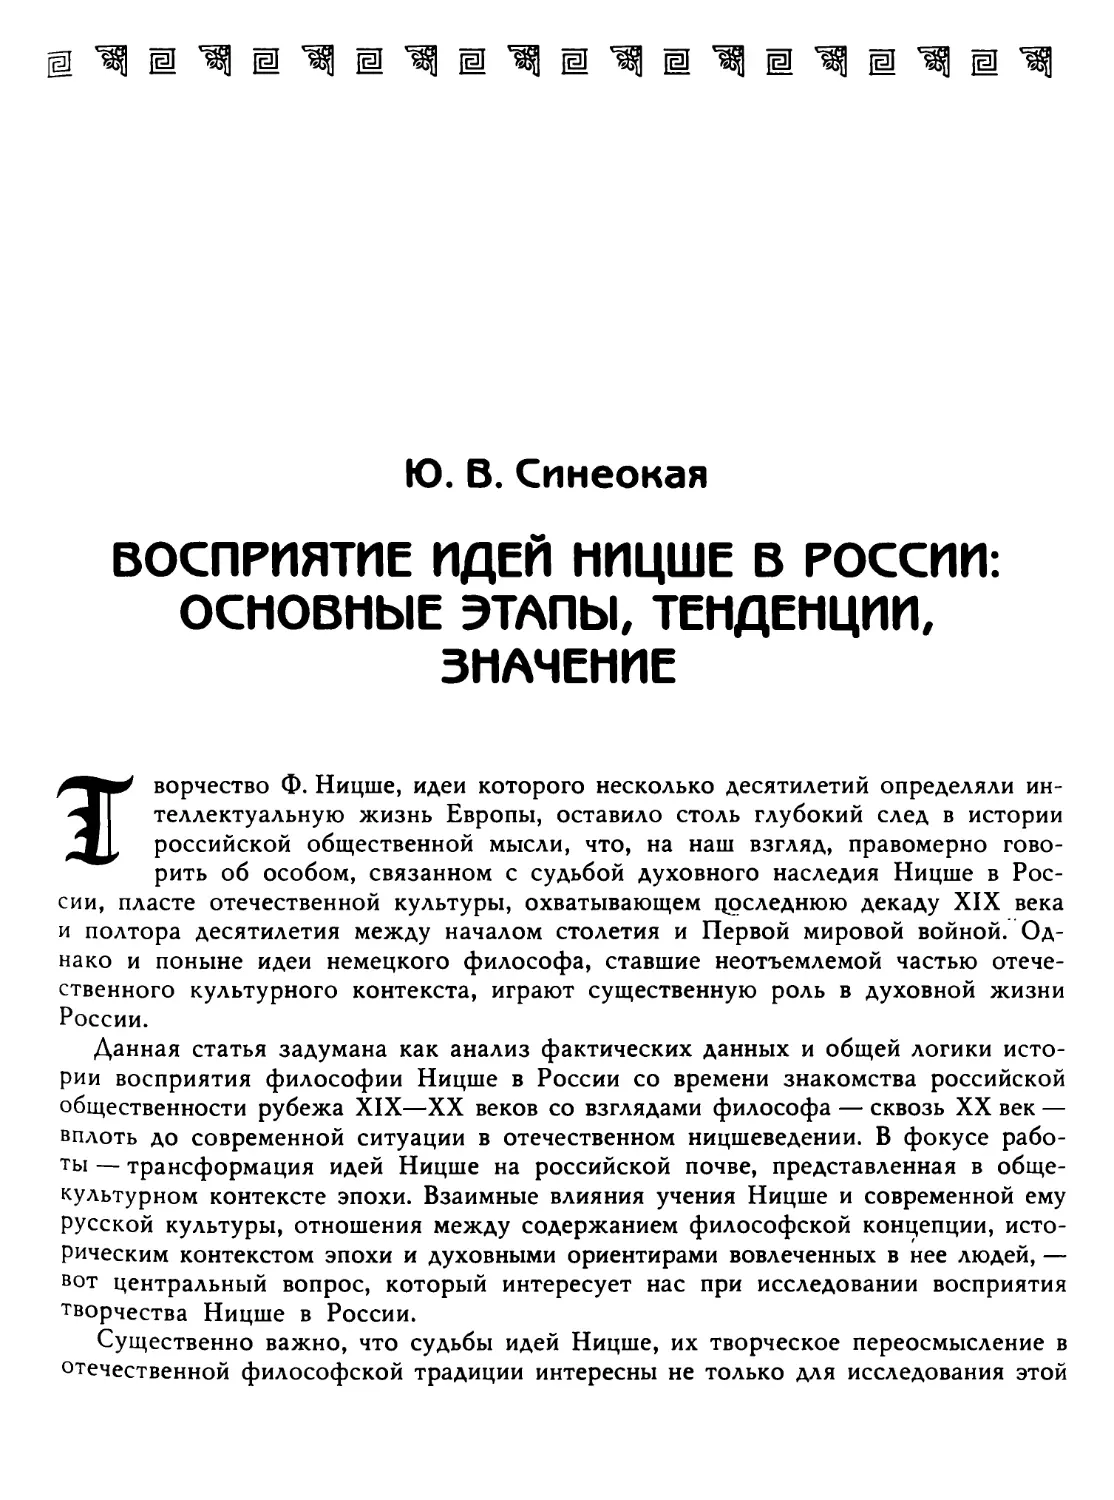 Синеокая Ю. В. Восприятие идей Ницше в России: основные этапы, тенденции, значение